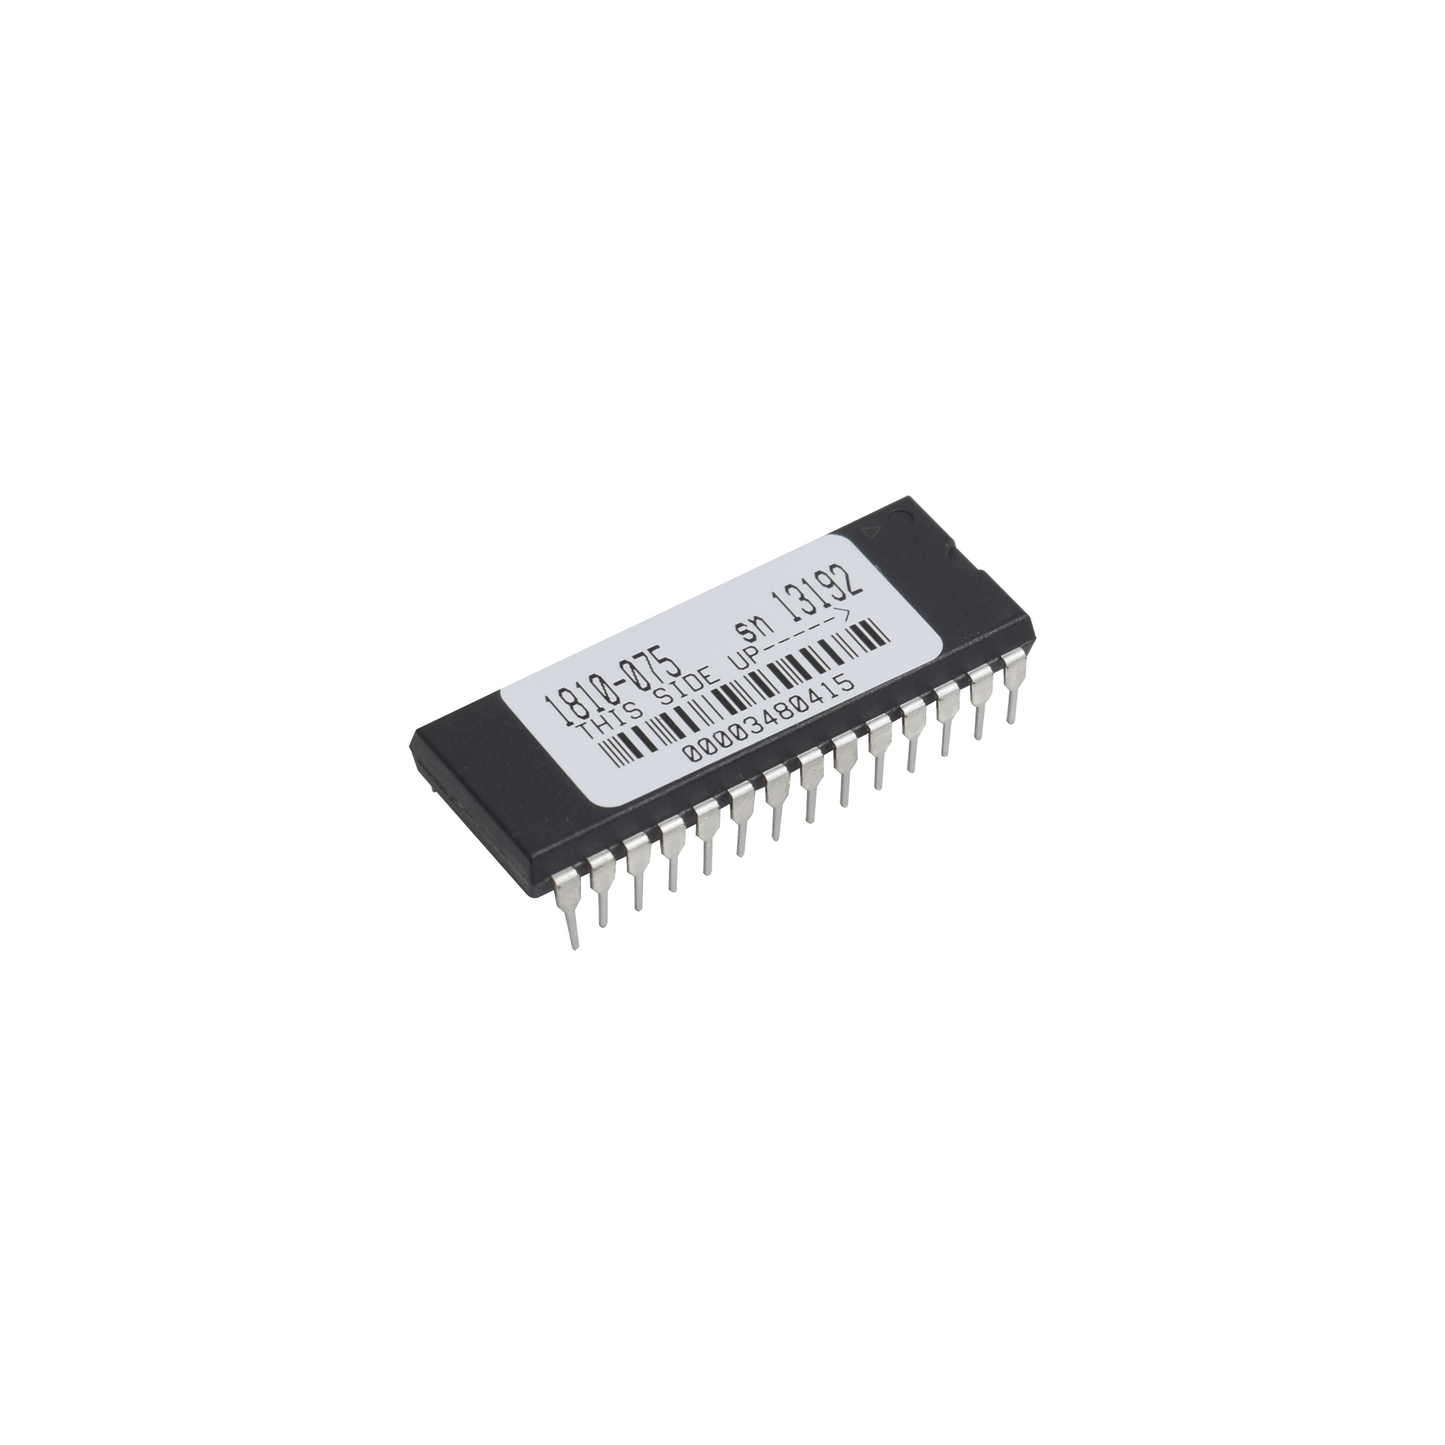 Refacción / Chip de Memoria Compatible con Porteros Telefonicos DKS /1802/1808 / Compatible con 1802-082